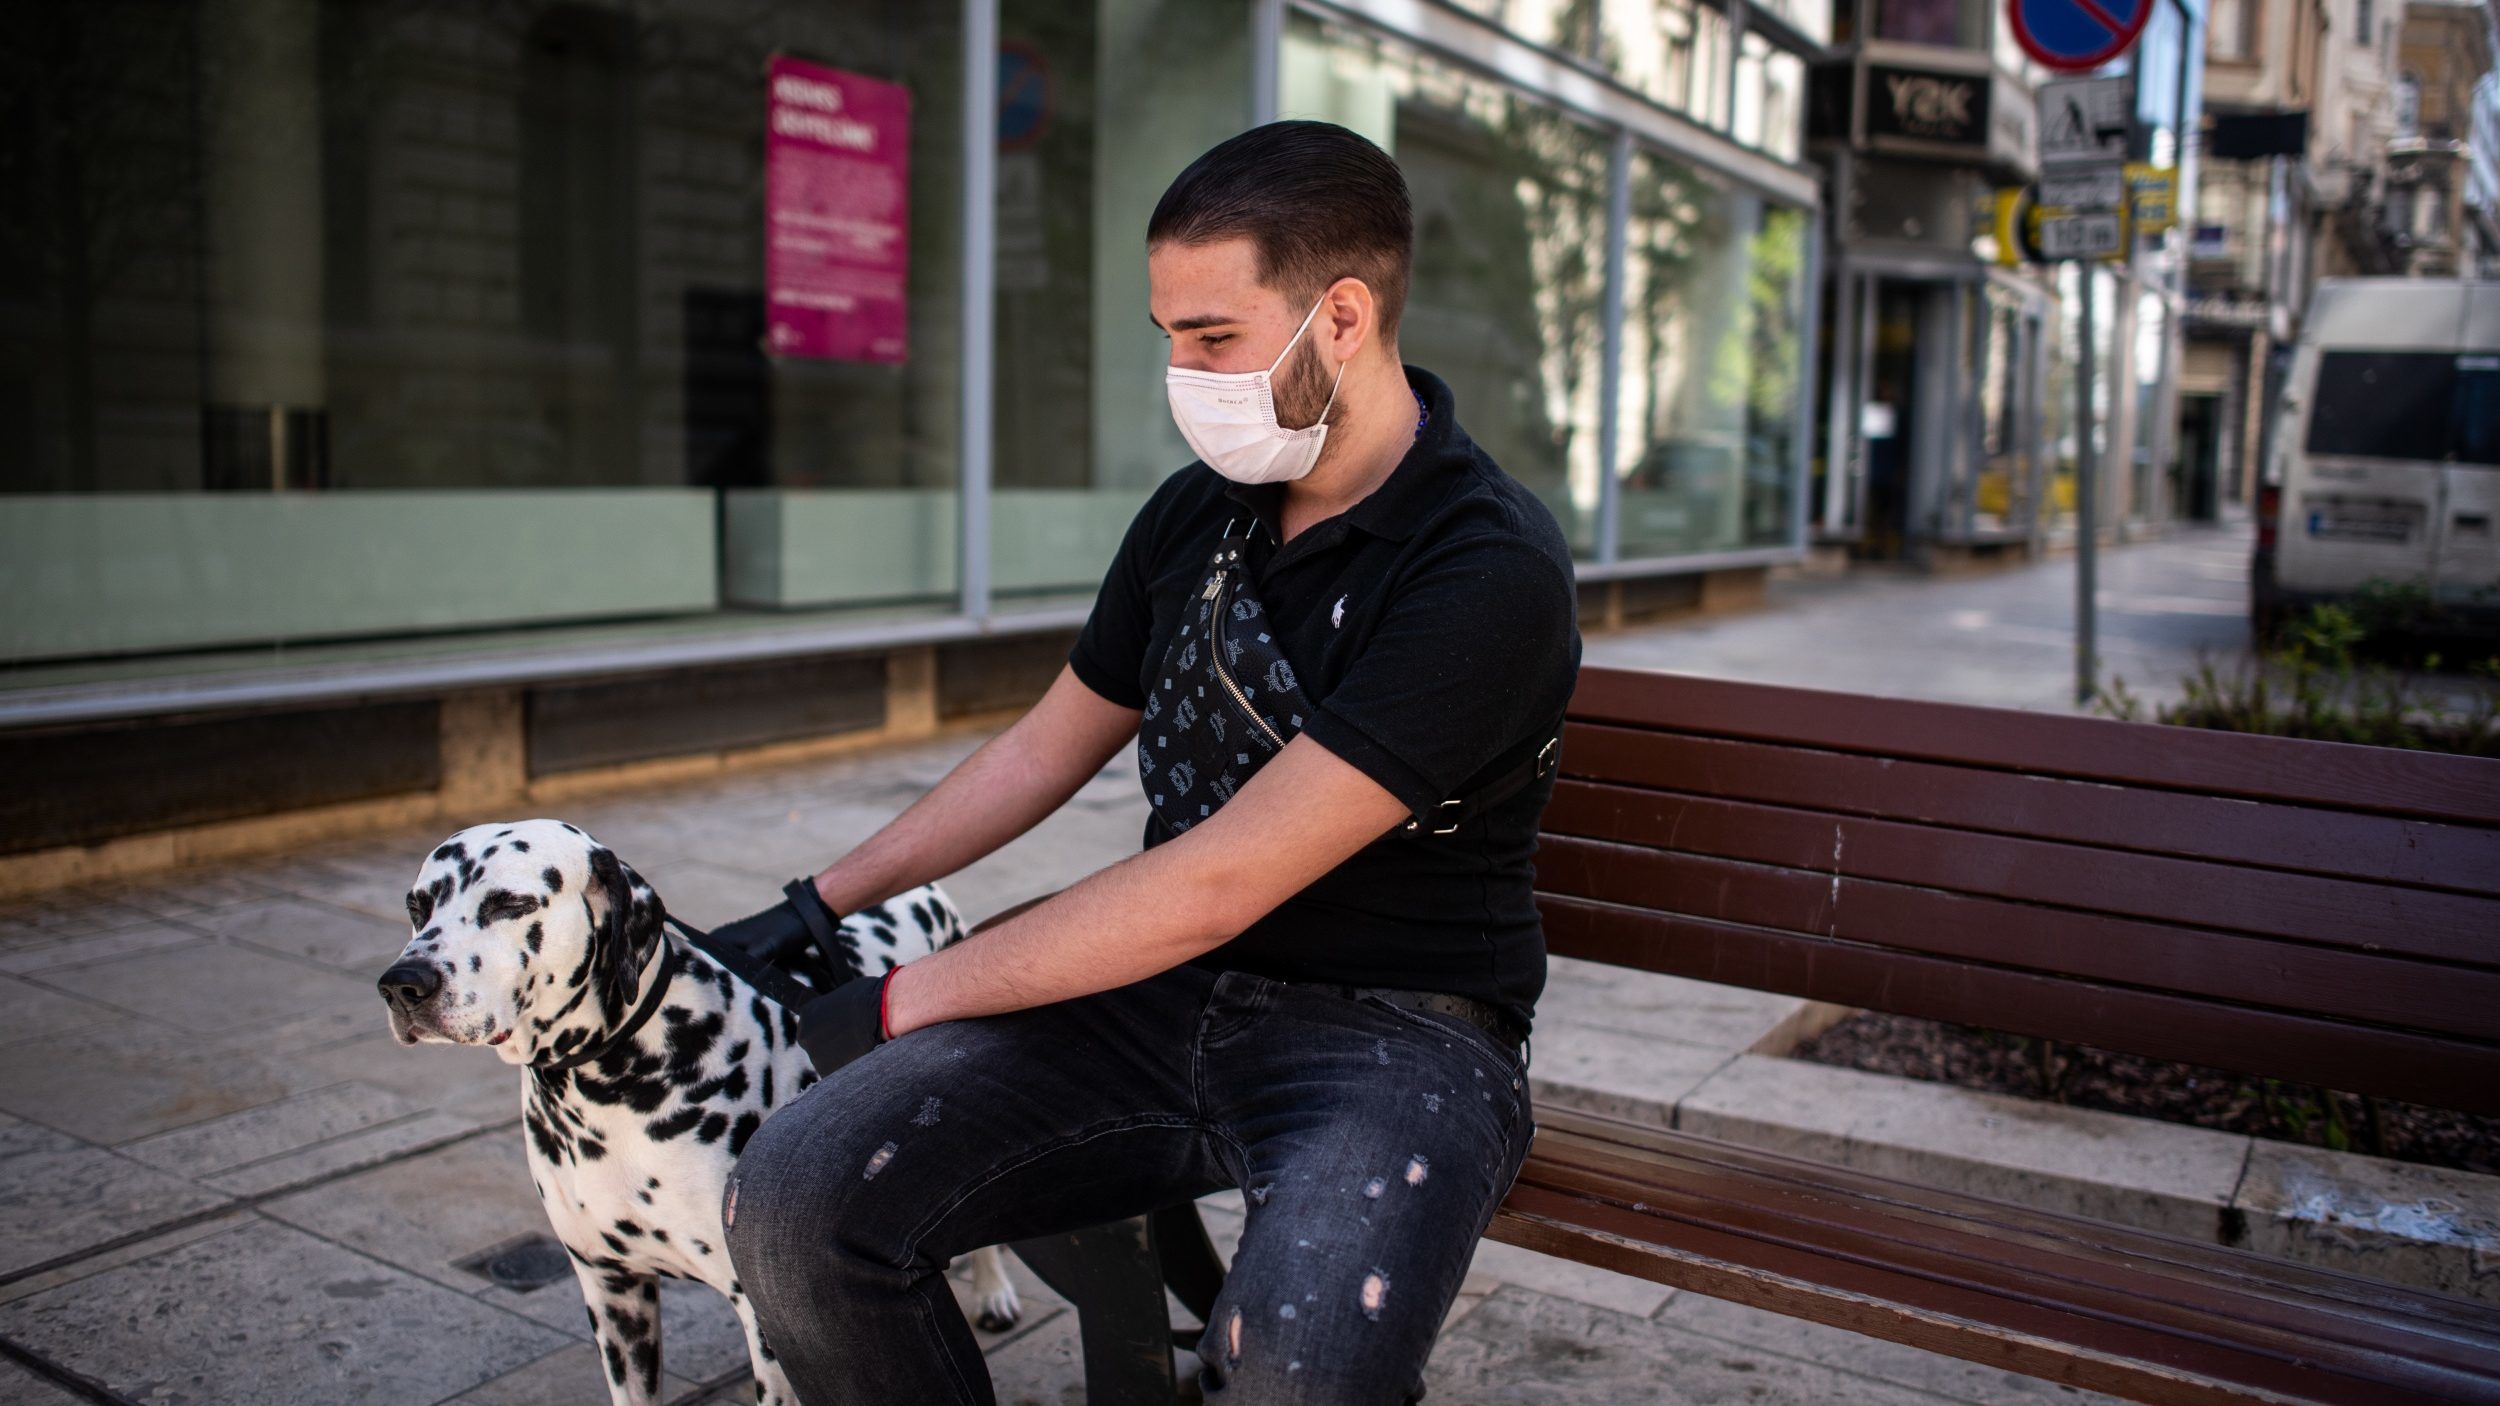 15 ezres helyszíni bírság járhat a maszk hiánya miatt a fővárosban